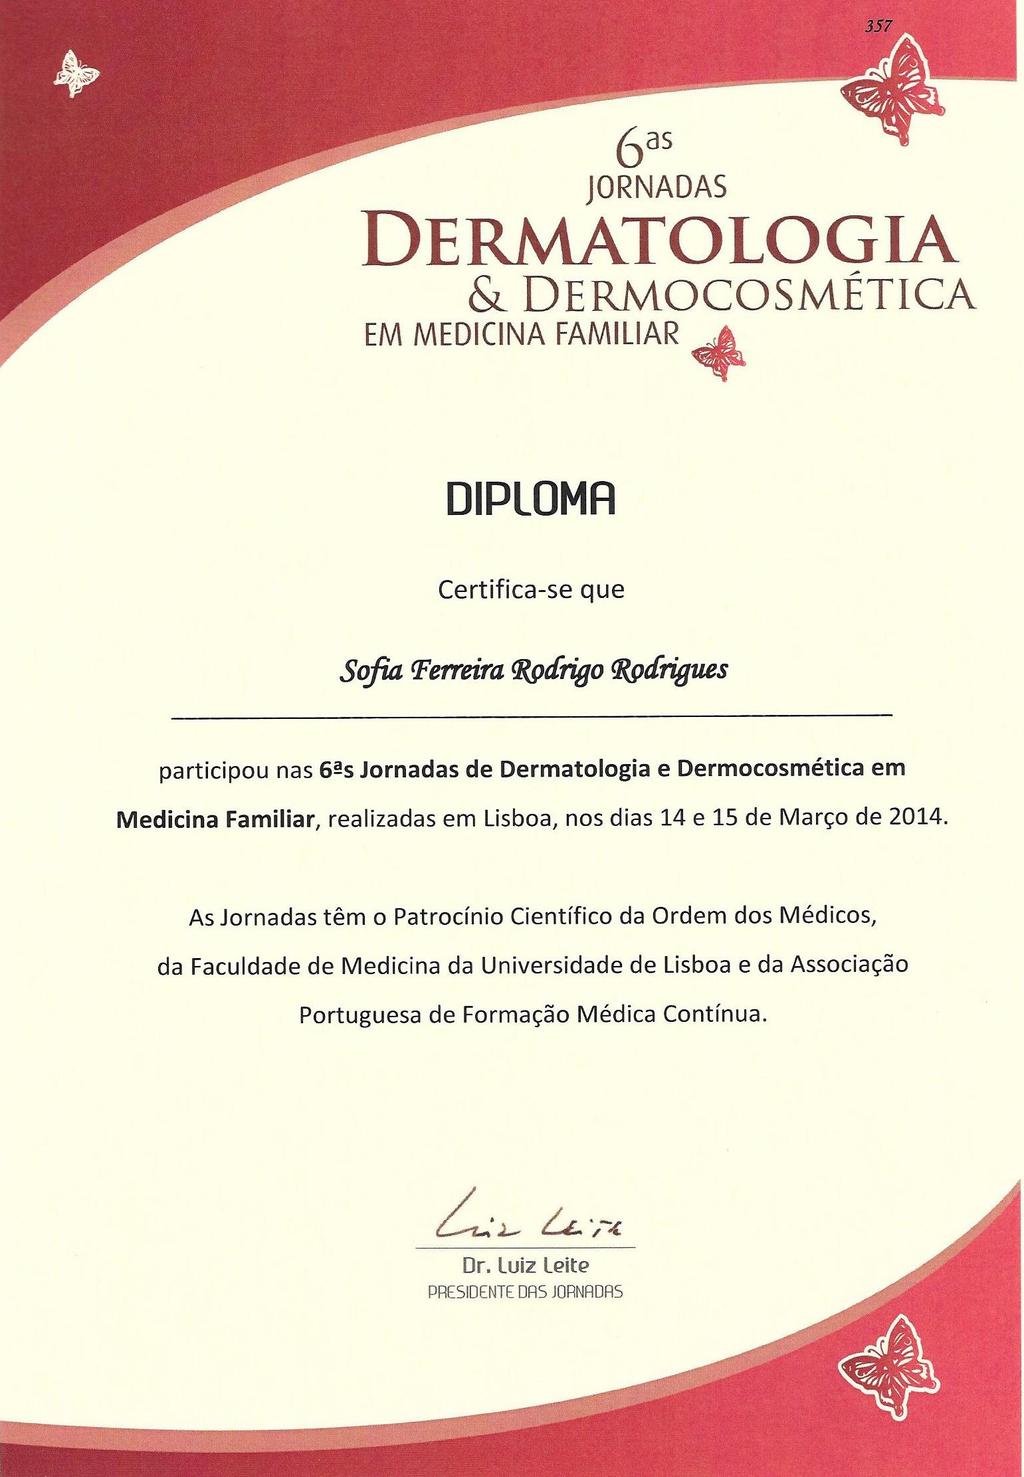 ANEXO XII Certificado de participação nas 6as Jornadas de